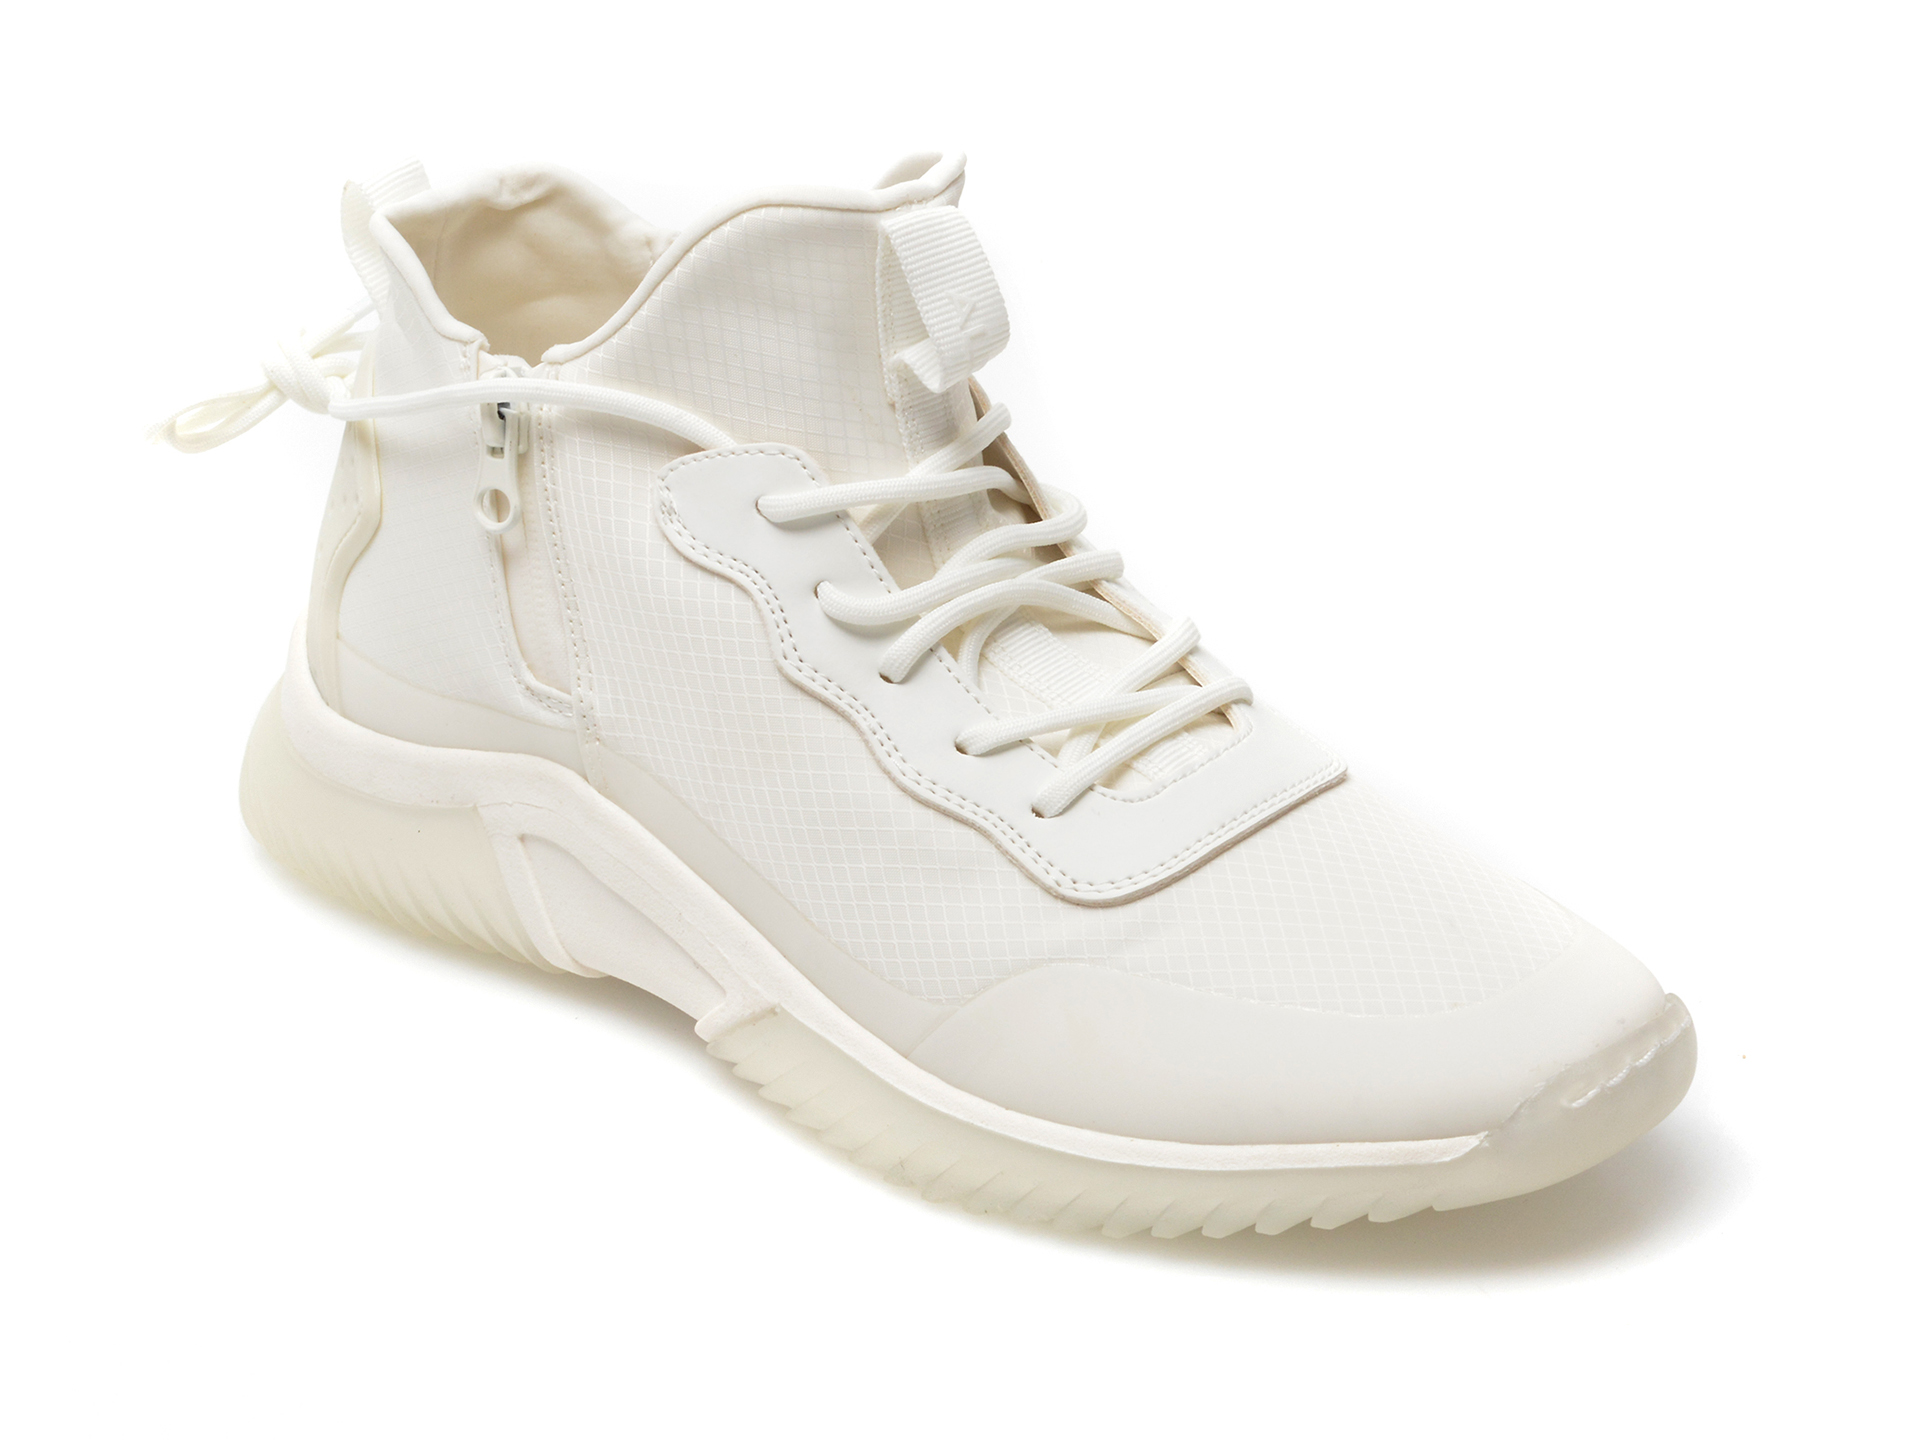 Pantofi sport ALDO albi, Ramsko100, din material textil Aldo